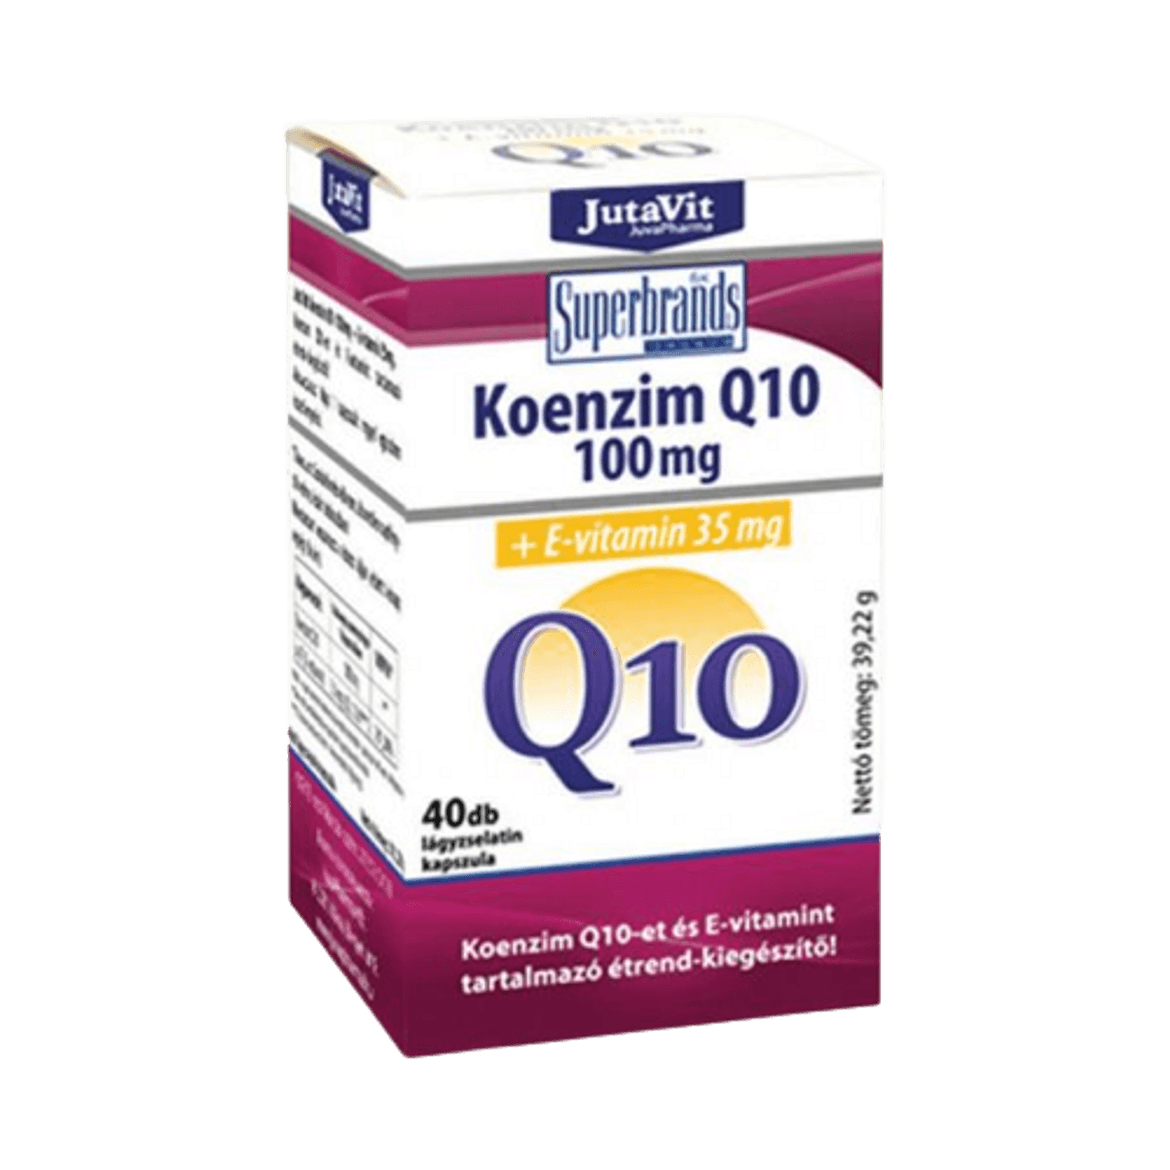 Jutavit Koenzim Q10 100 mg +E-vitamin Ã©trend-kiegÃ©szÃ­tÅ‘ kapszula